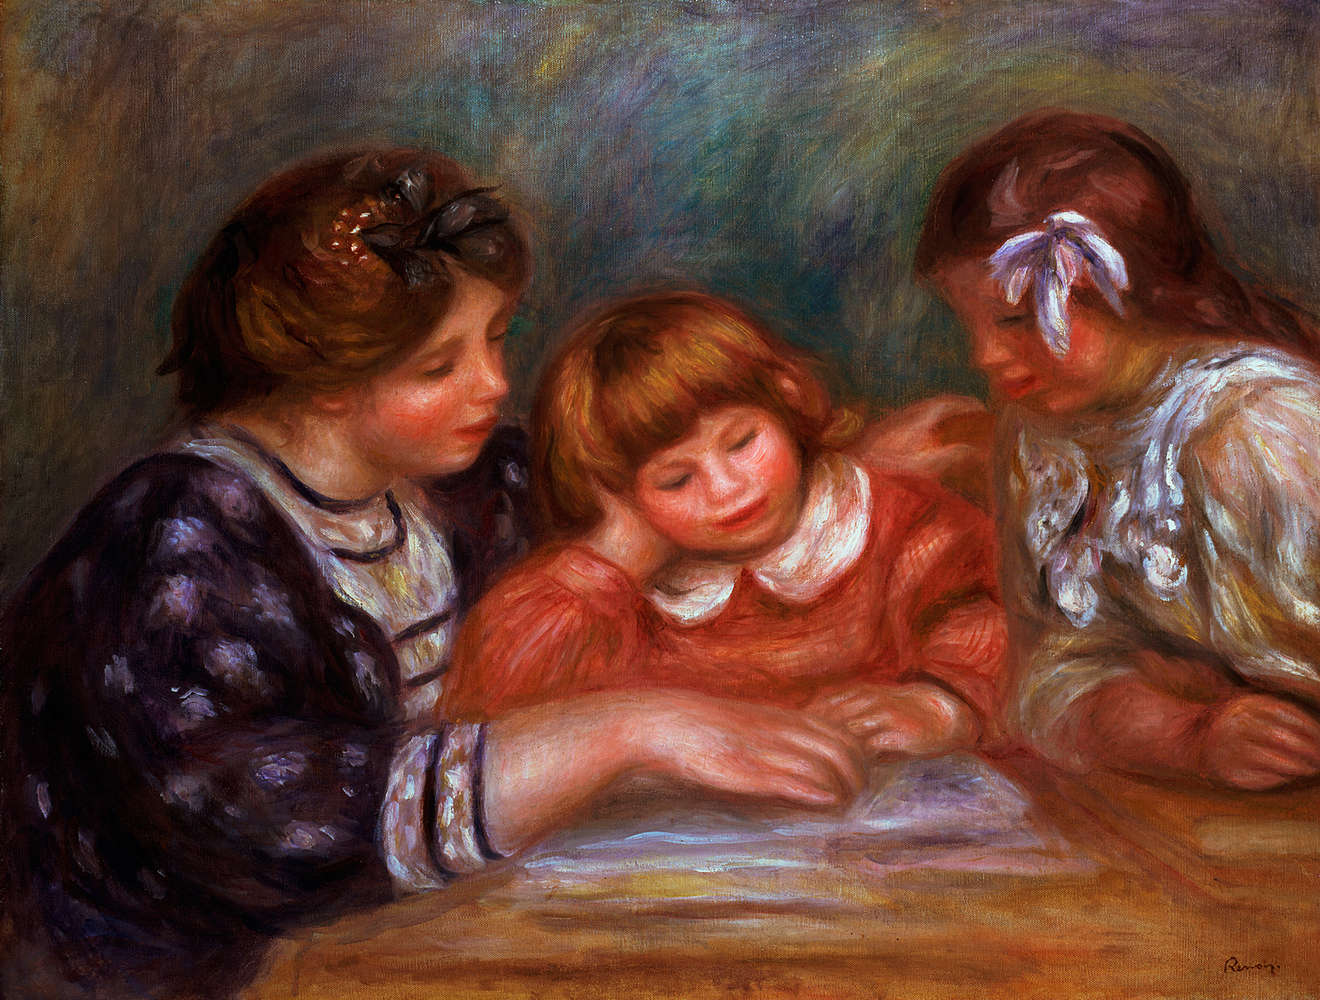             Il murale "La lezione" di Pierre Auguste Renoir
        